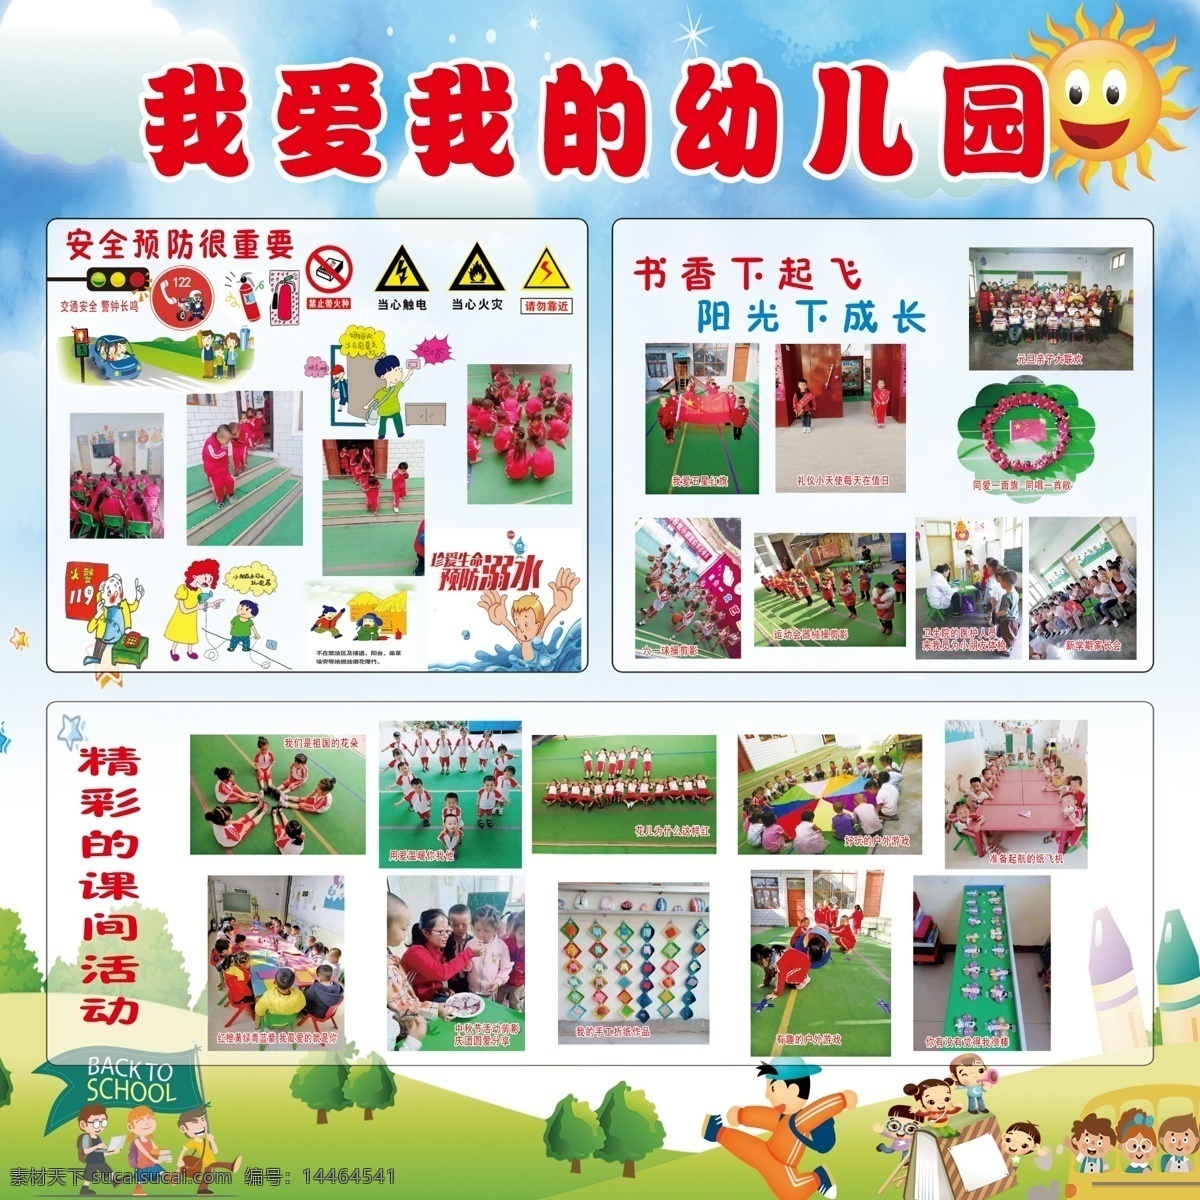 我爱 幼儿园 幼儿园版面 幼儿园宣传 幼儿园安全 安全版面 学校版面综合 室外广告设计